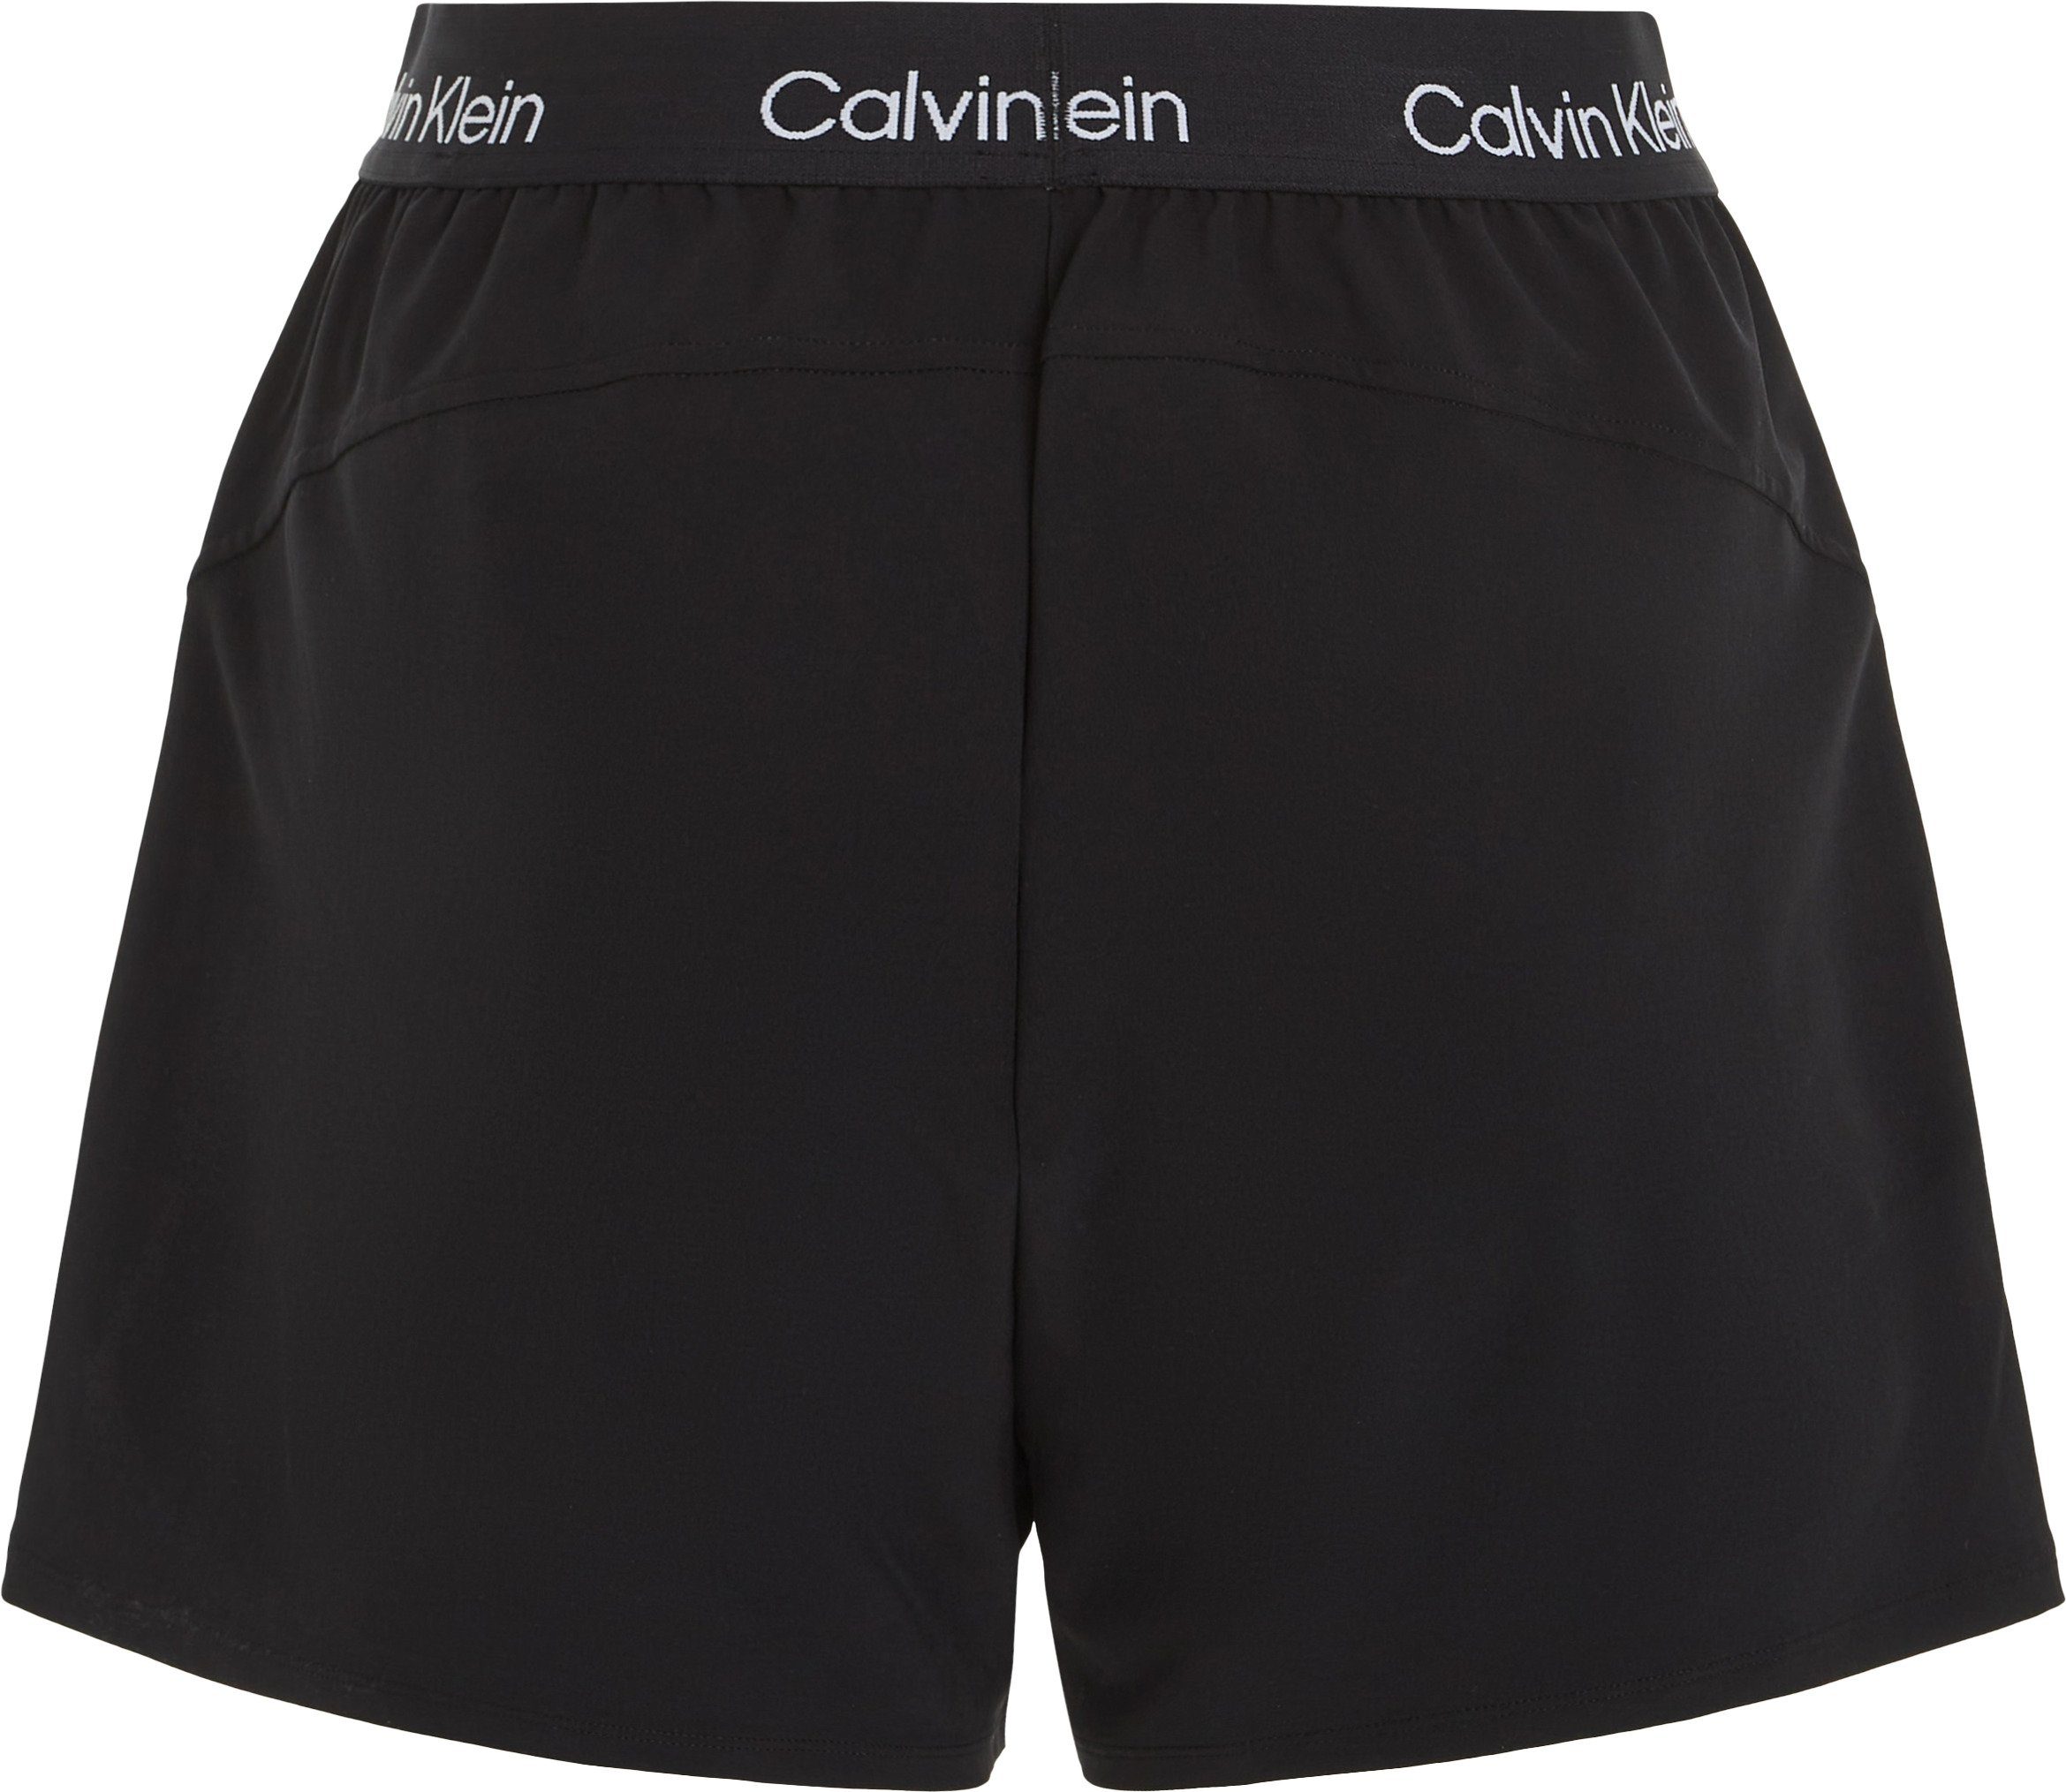 Klein Calvin Sport Radlerhose schwarz